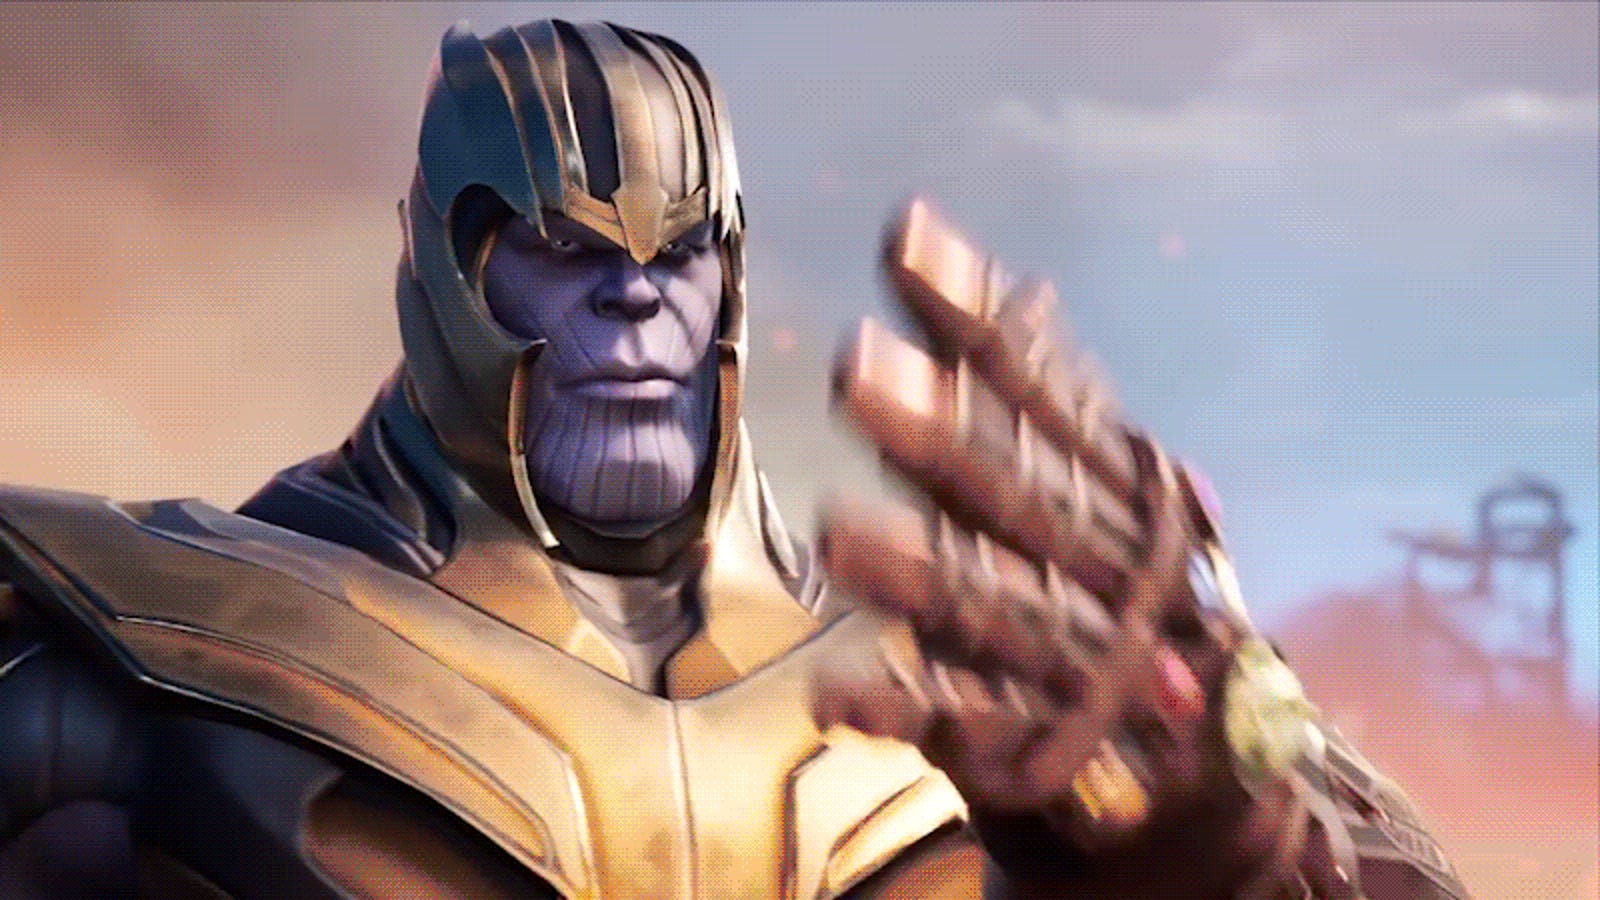 thanos returns in fortnite s avengers endgame event and he s got company - thanos mode fortnite trailer